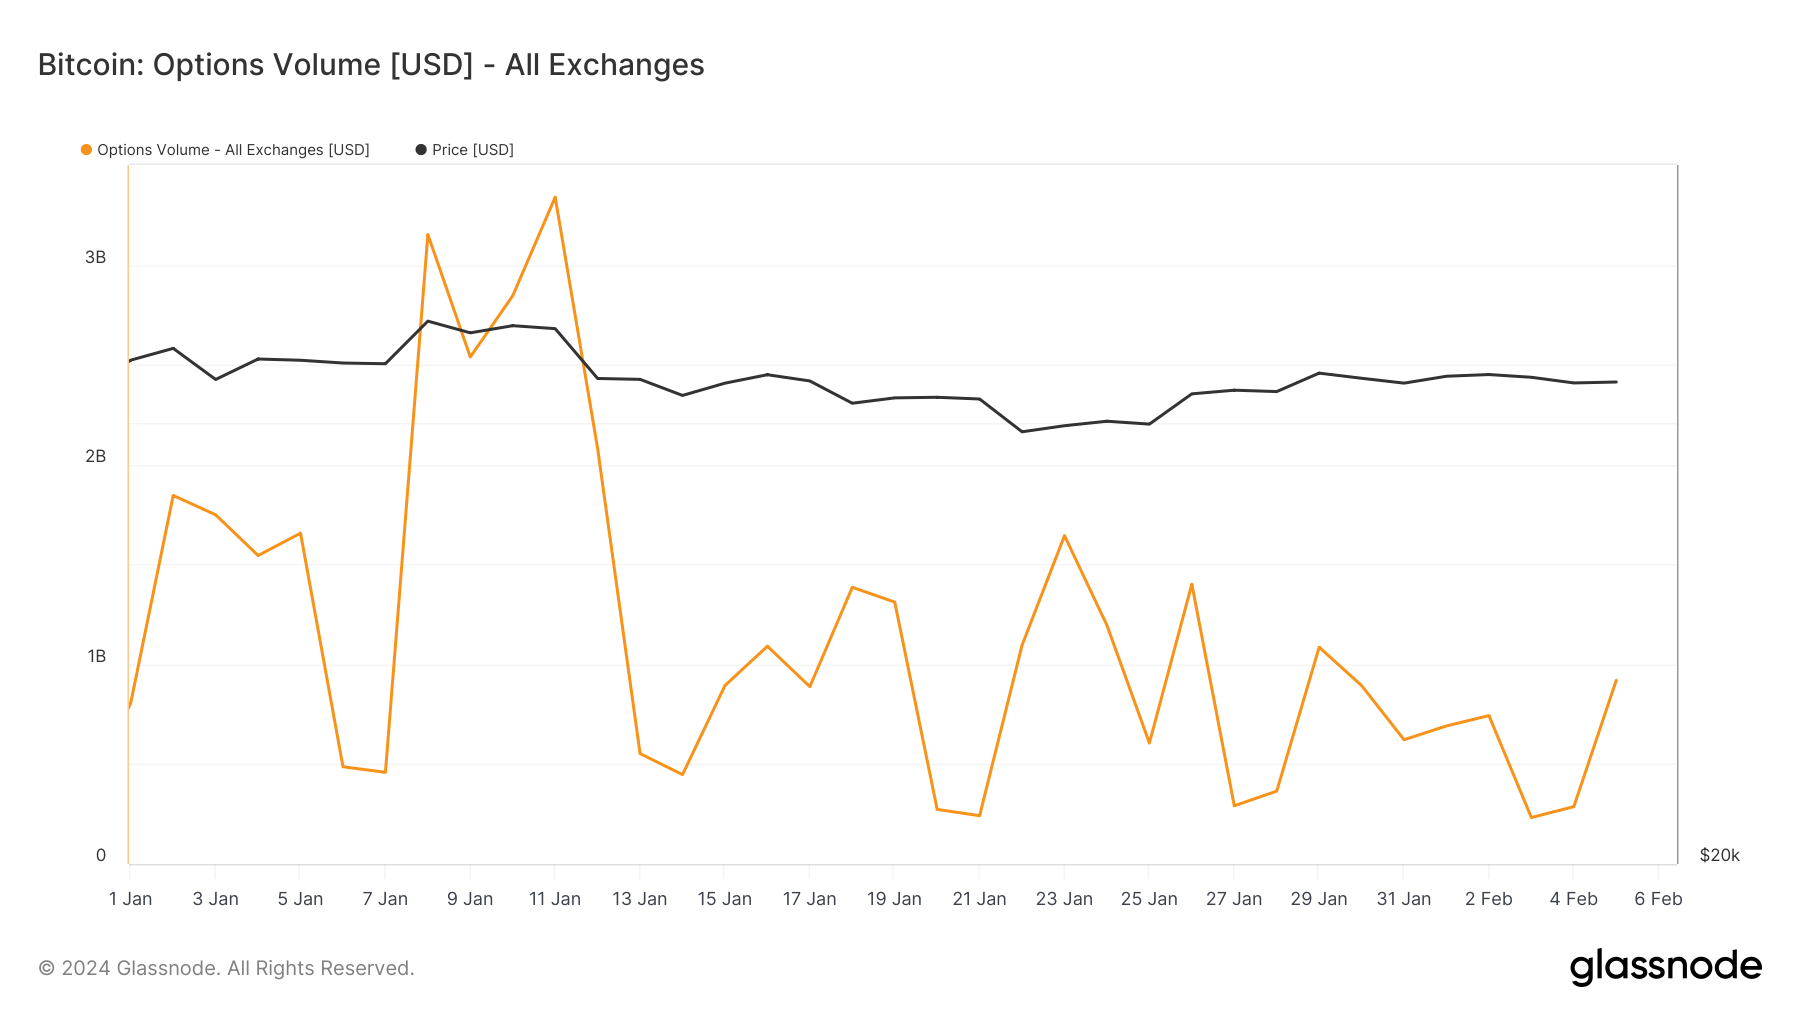 Volume d'options Bitcoin depuis le début de l'année